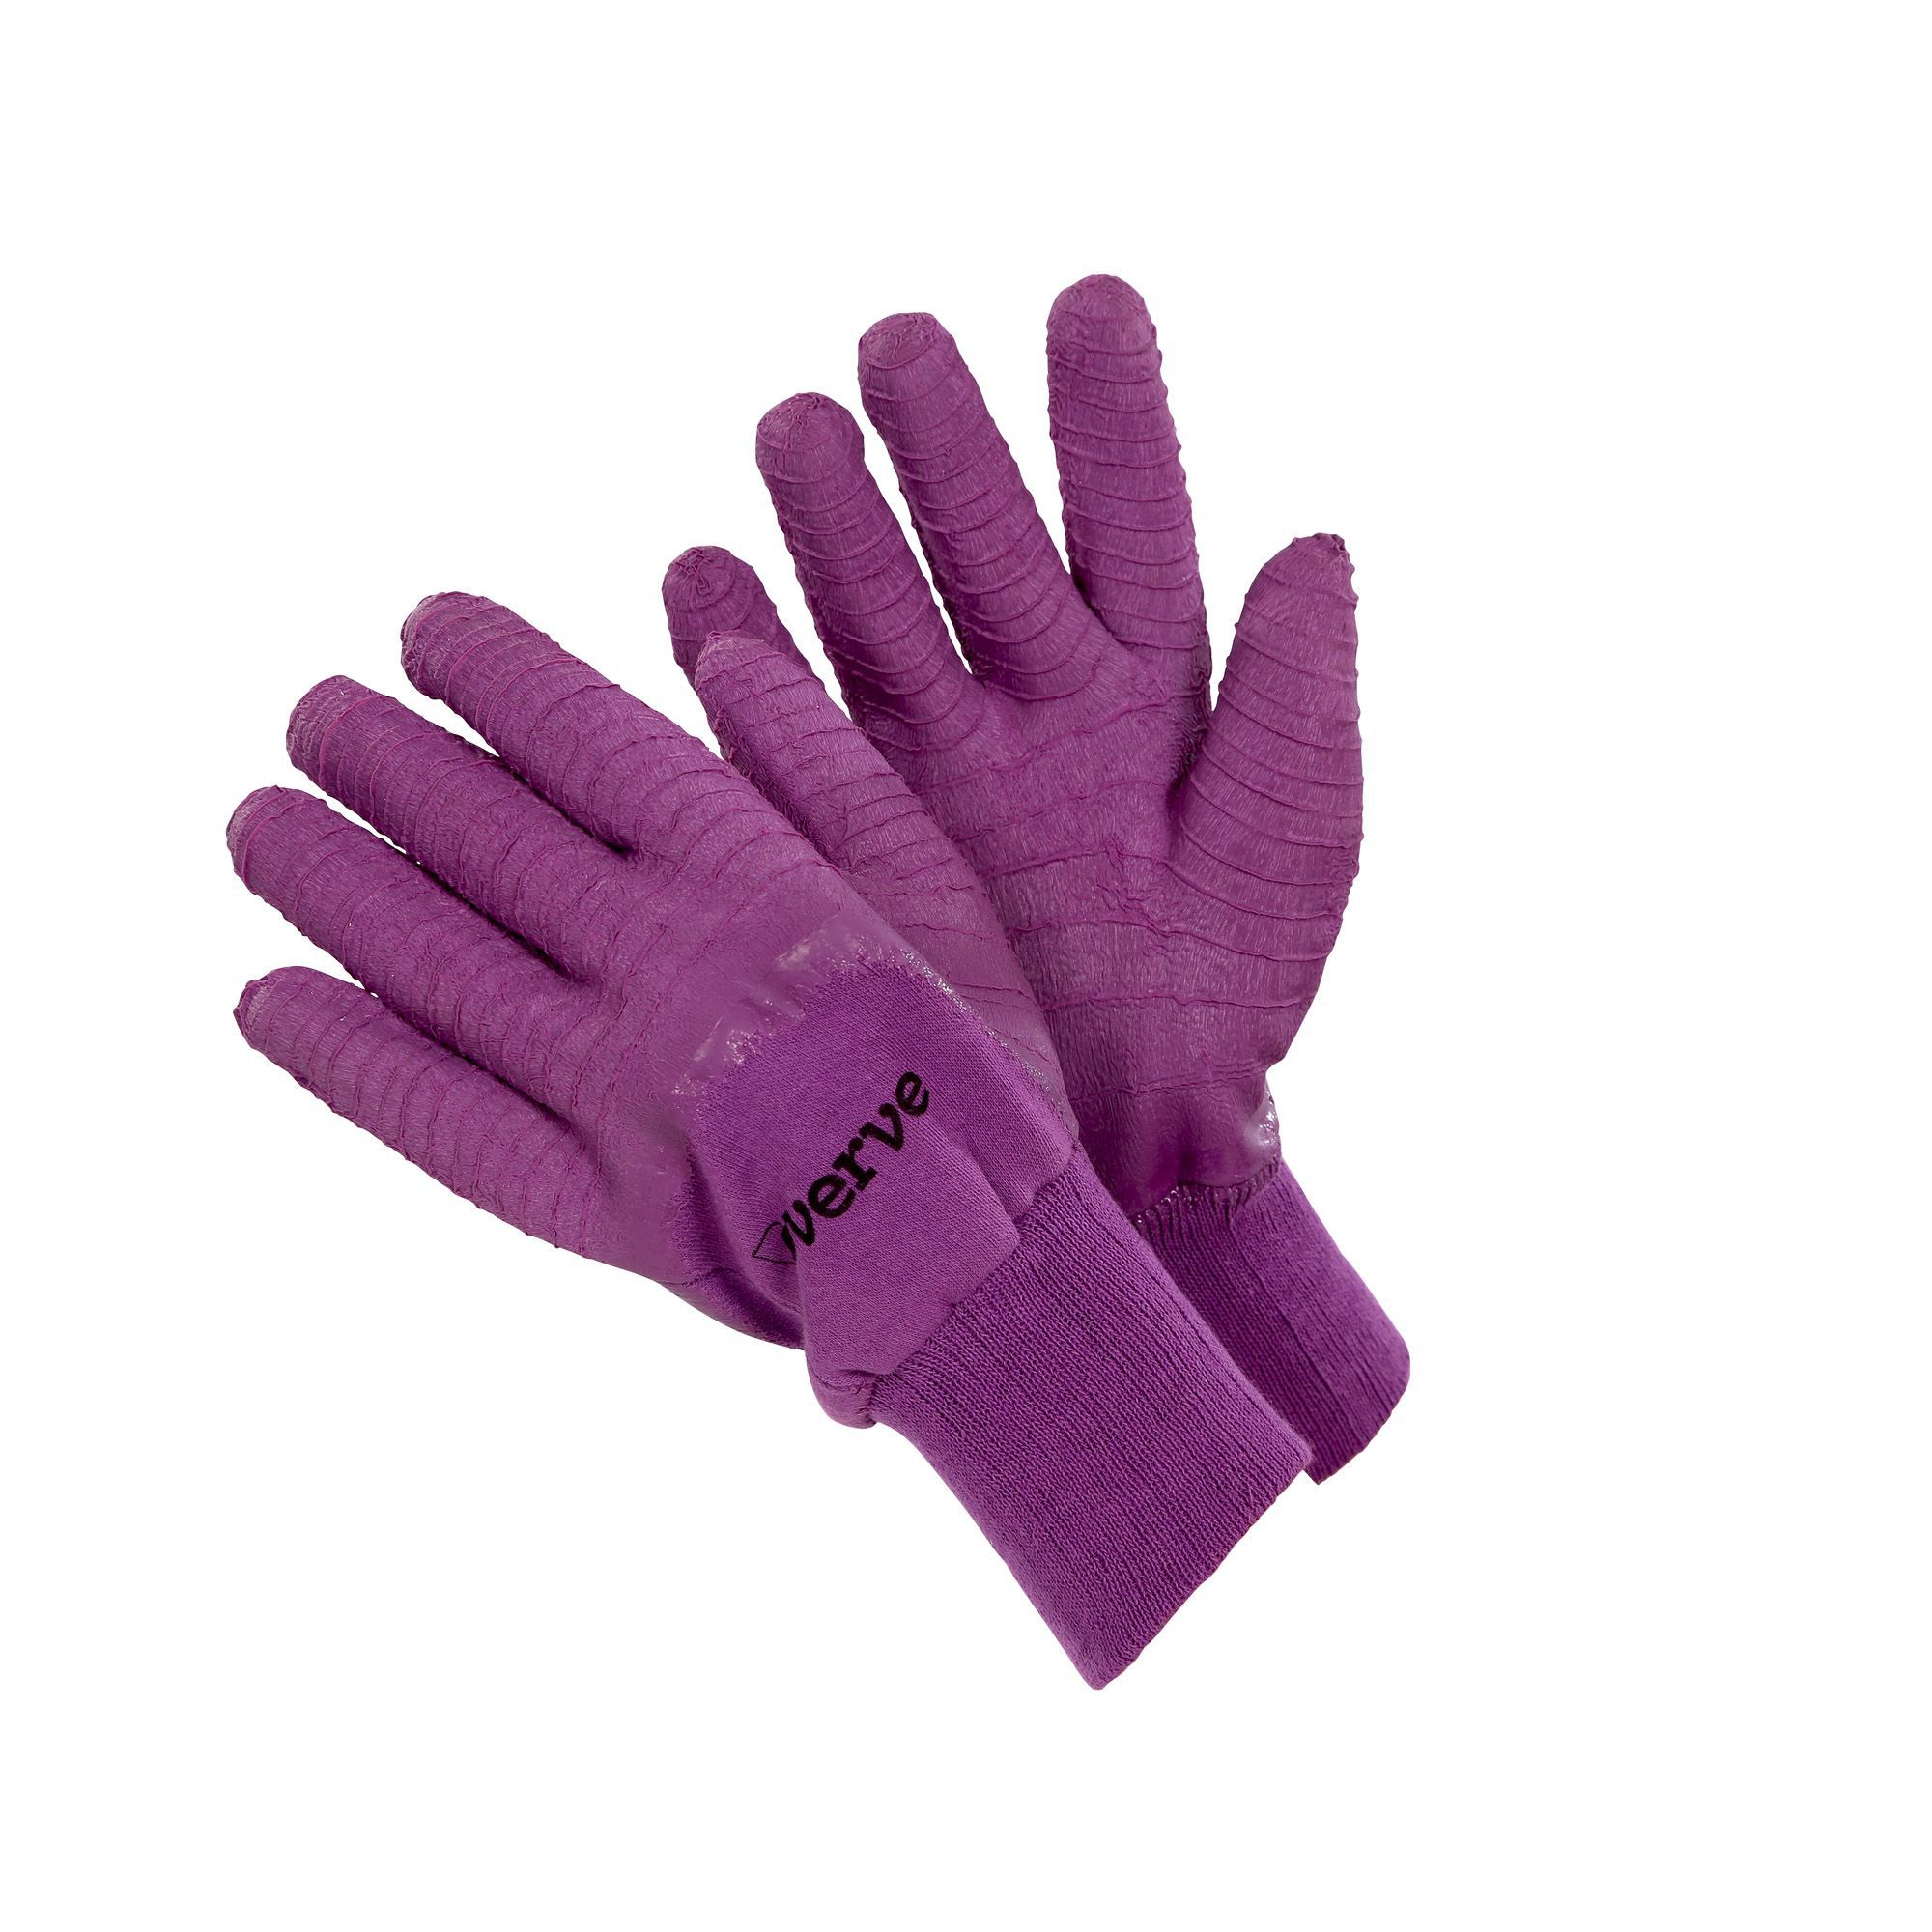 Verve Gardening gloves